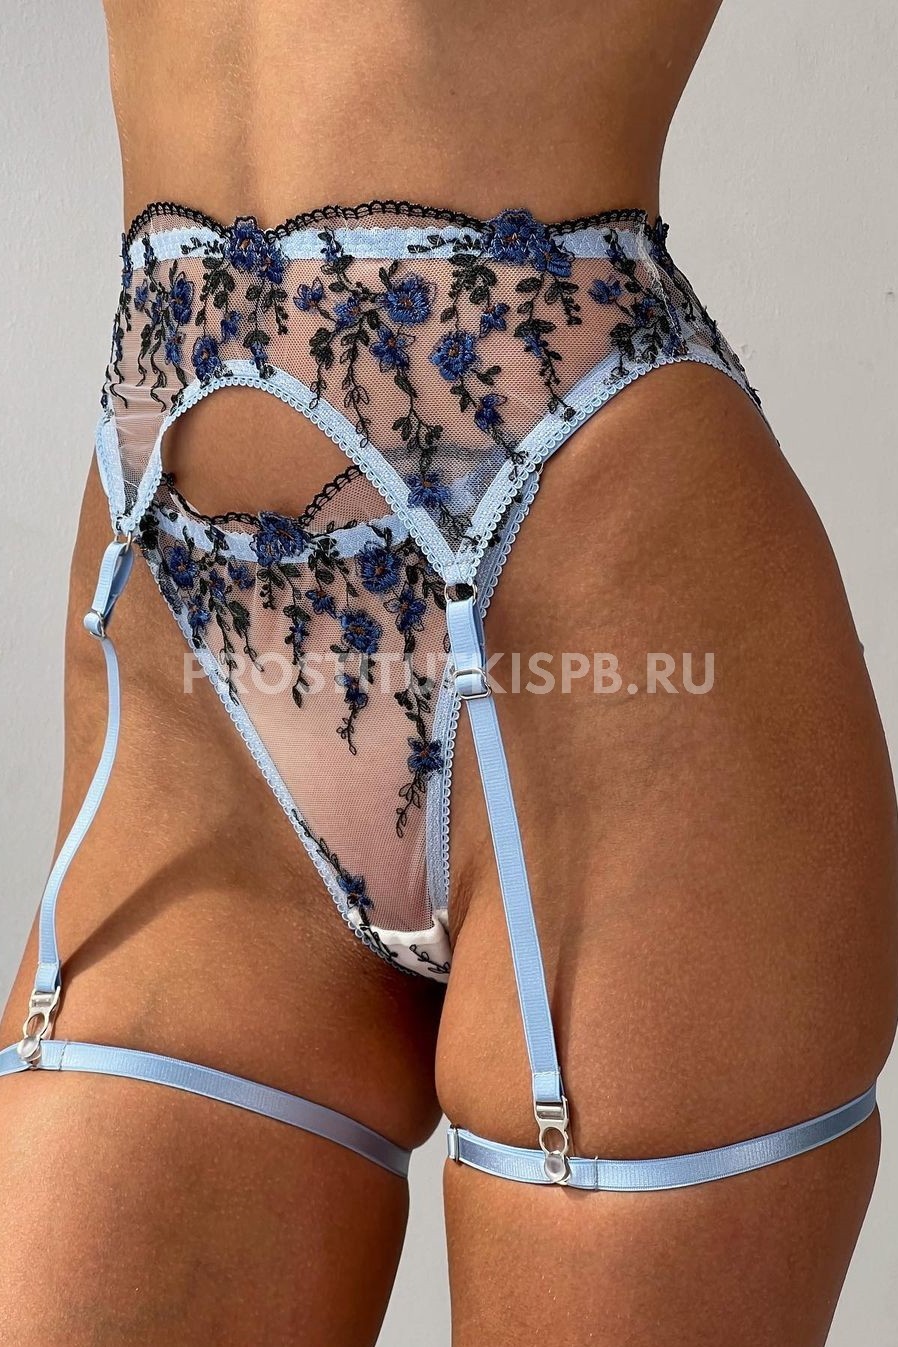 ПроституткаTanya23000 рублей/час – фото2